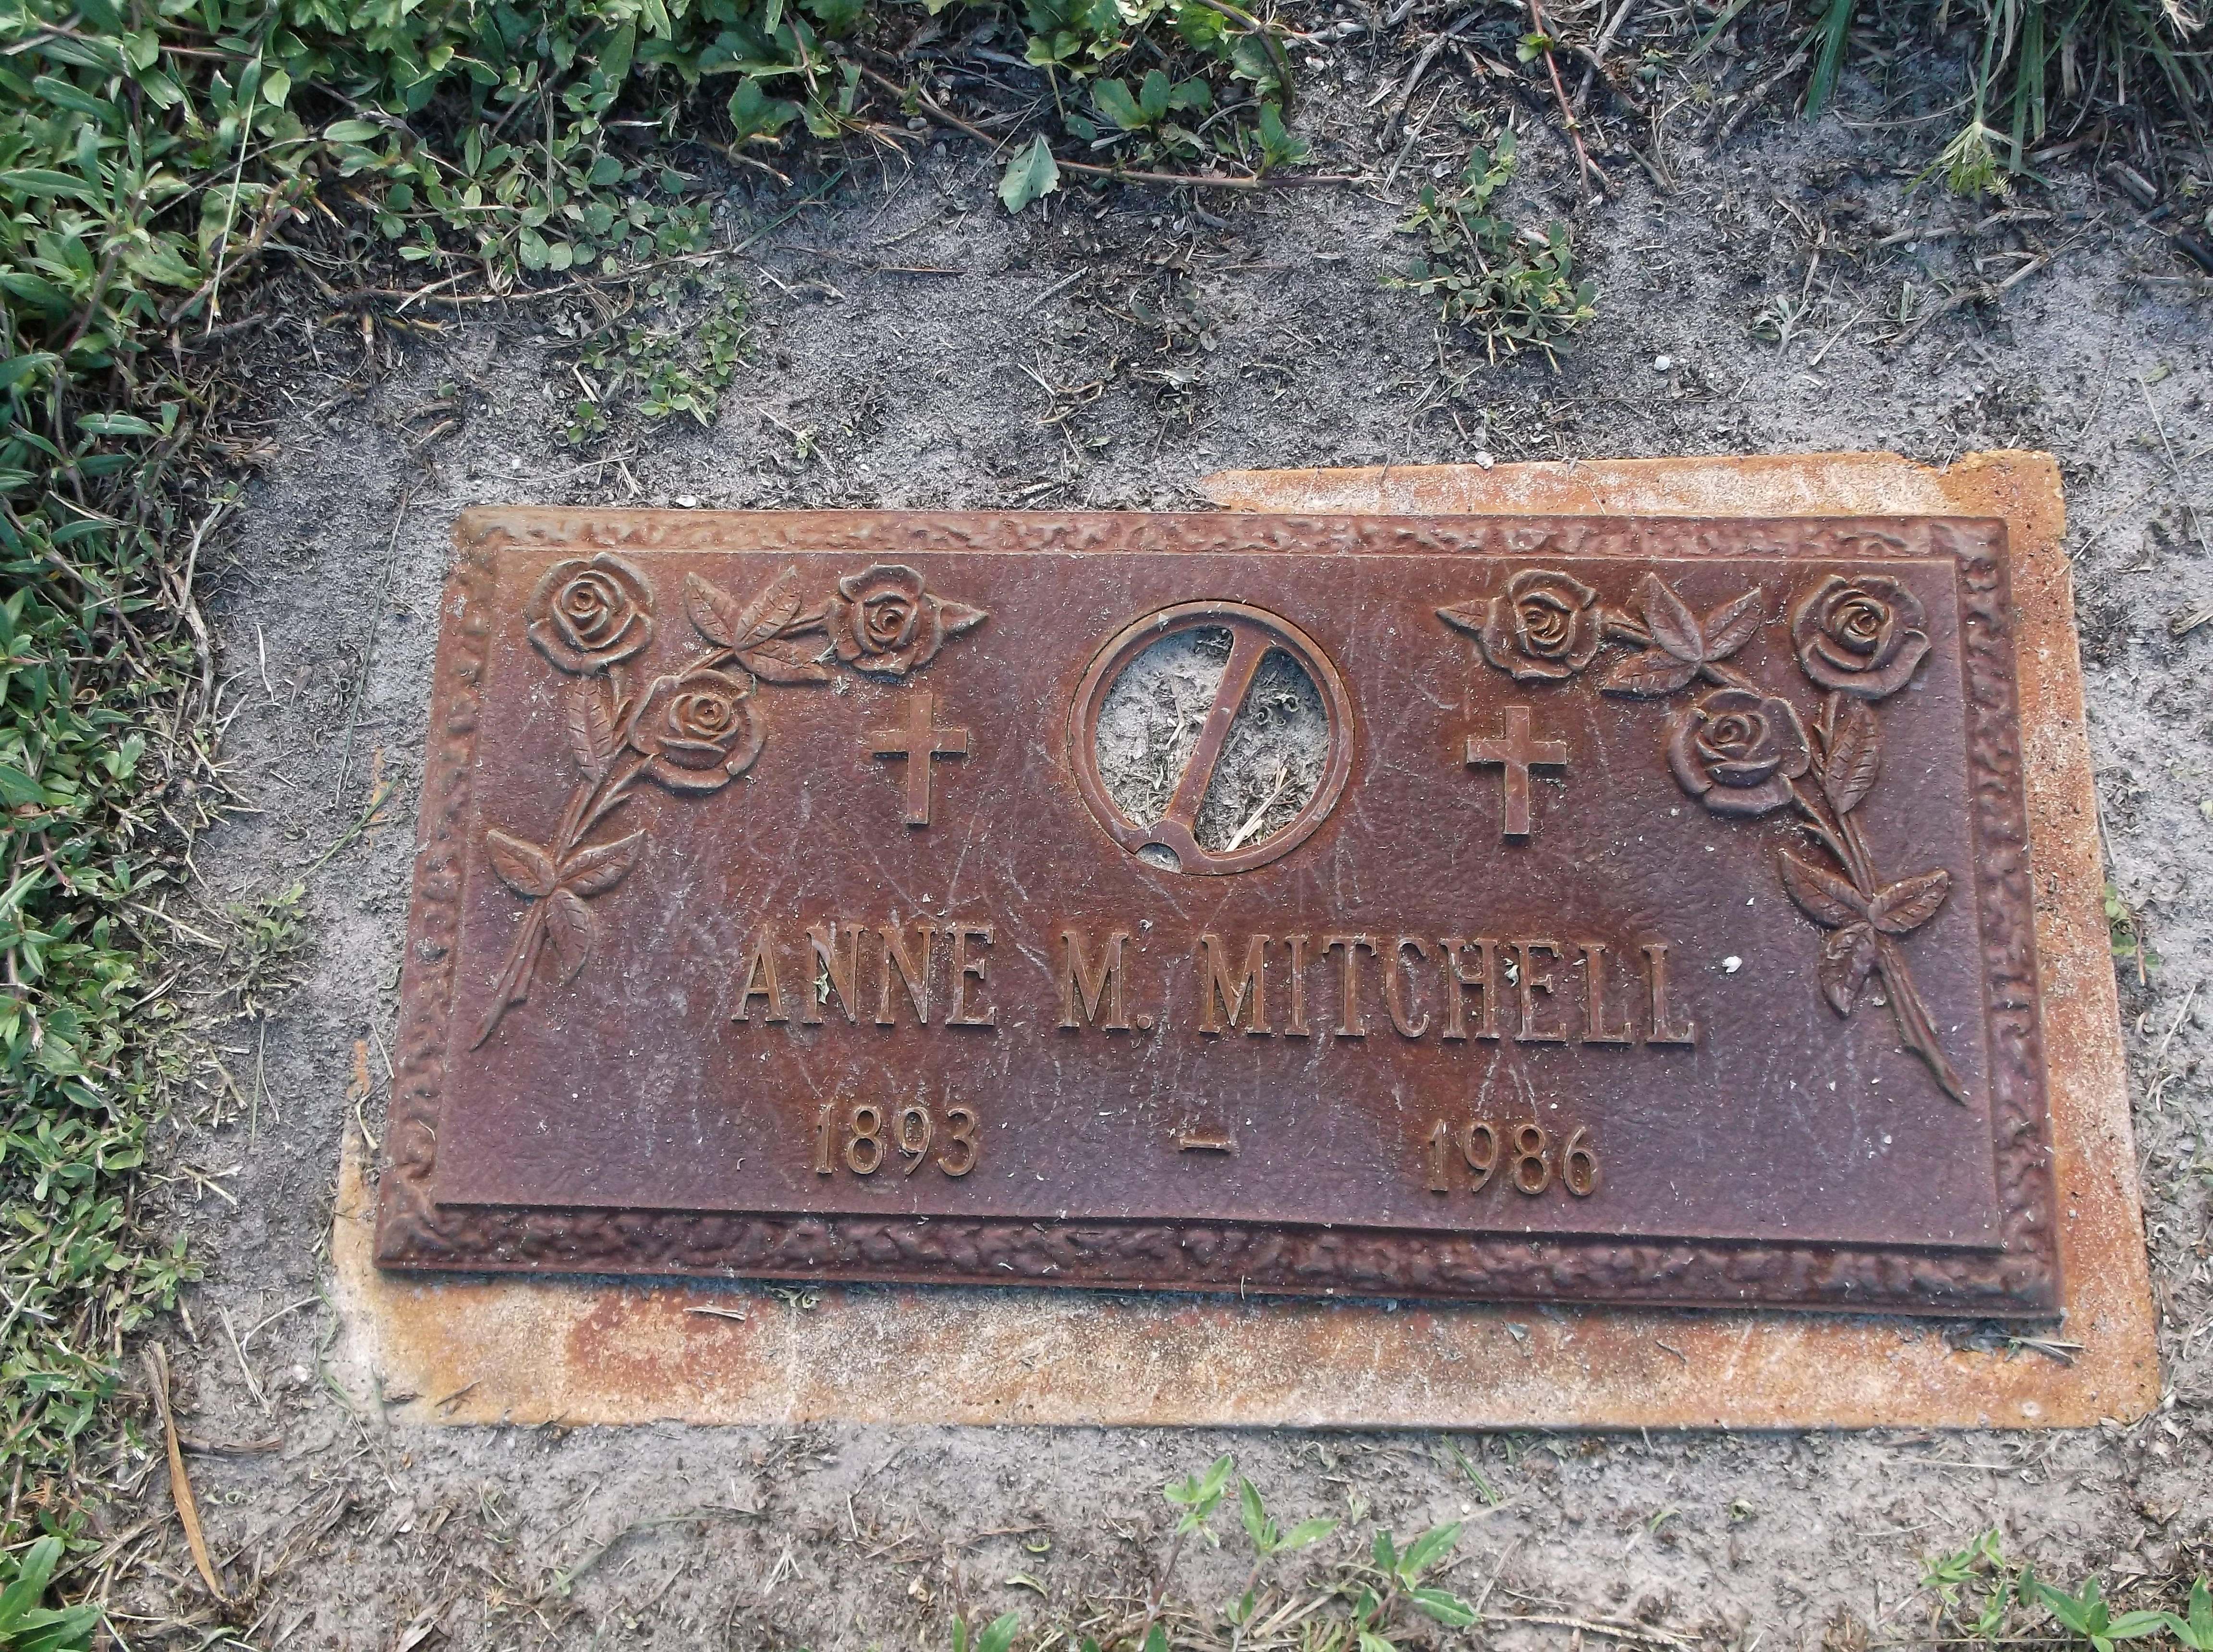 Anne M Mitchell